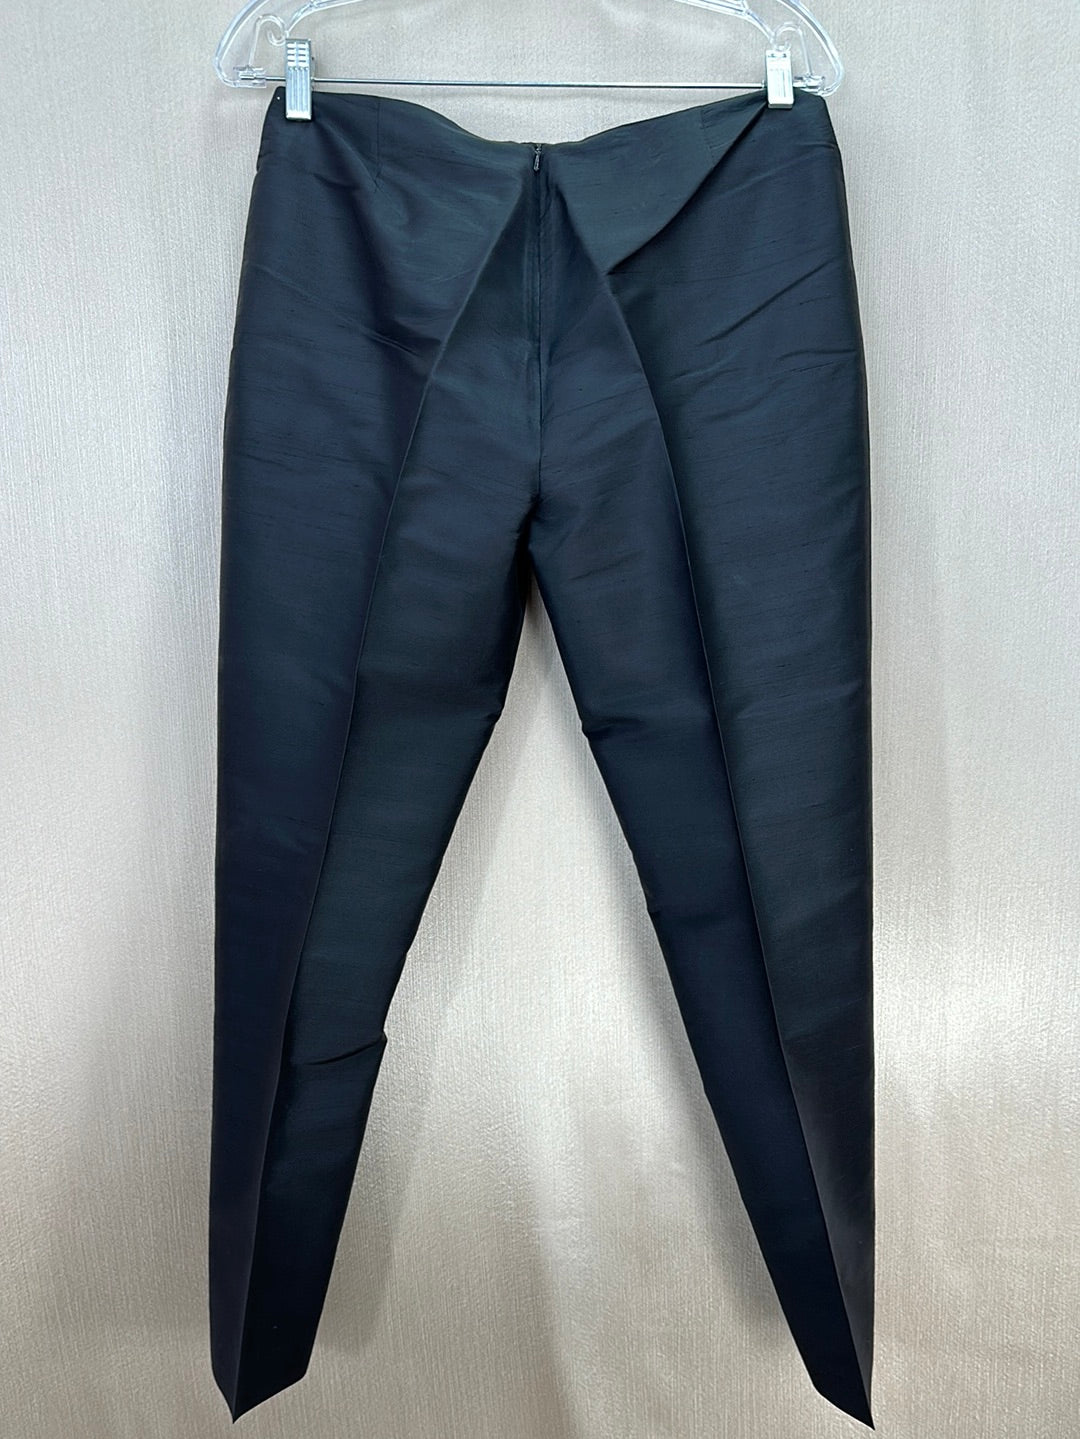 RALPH LAUREN SPORT black 100% Silk Side Zip Tapered Crop Pants - 8